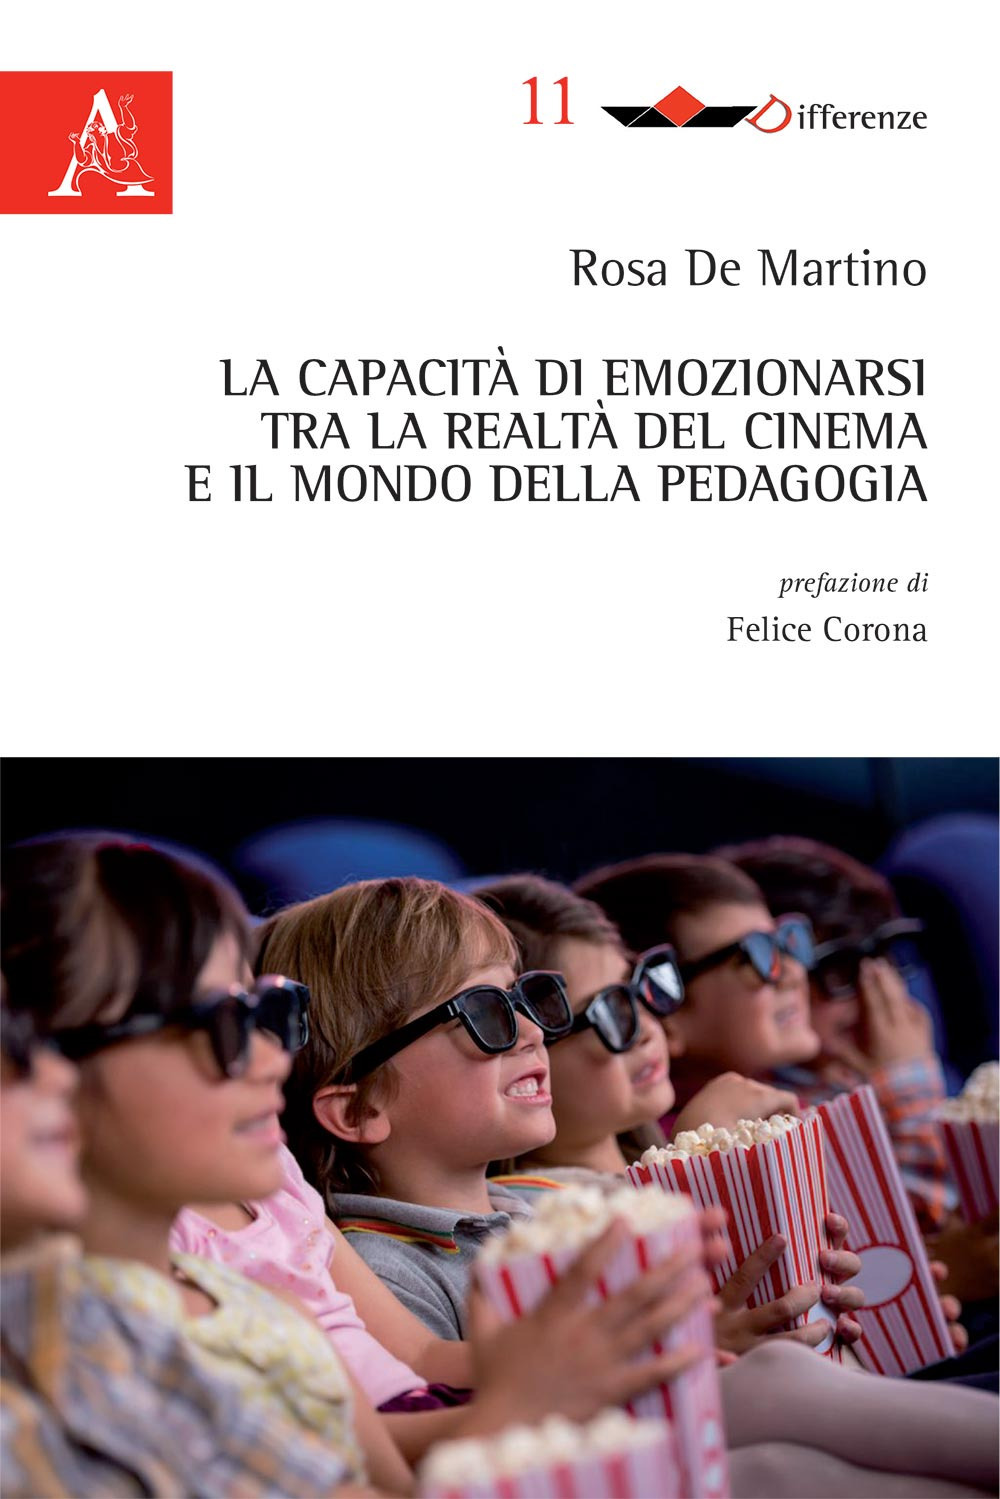 La capacità di emozionarsi tra la realtà del cinema e il mondo della pedagogia